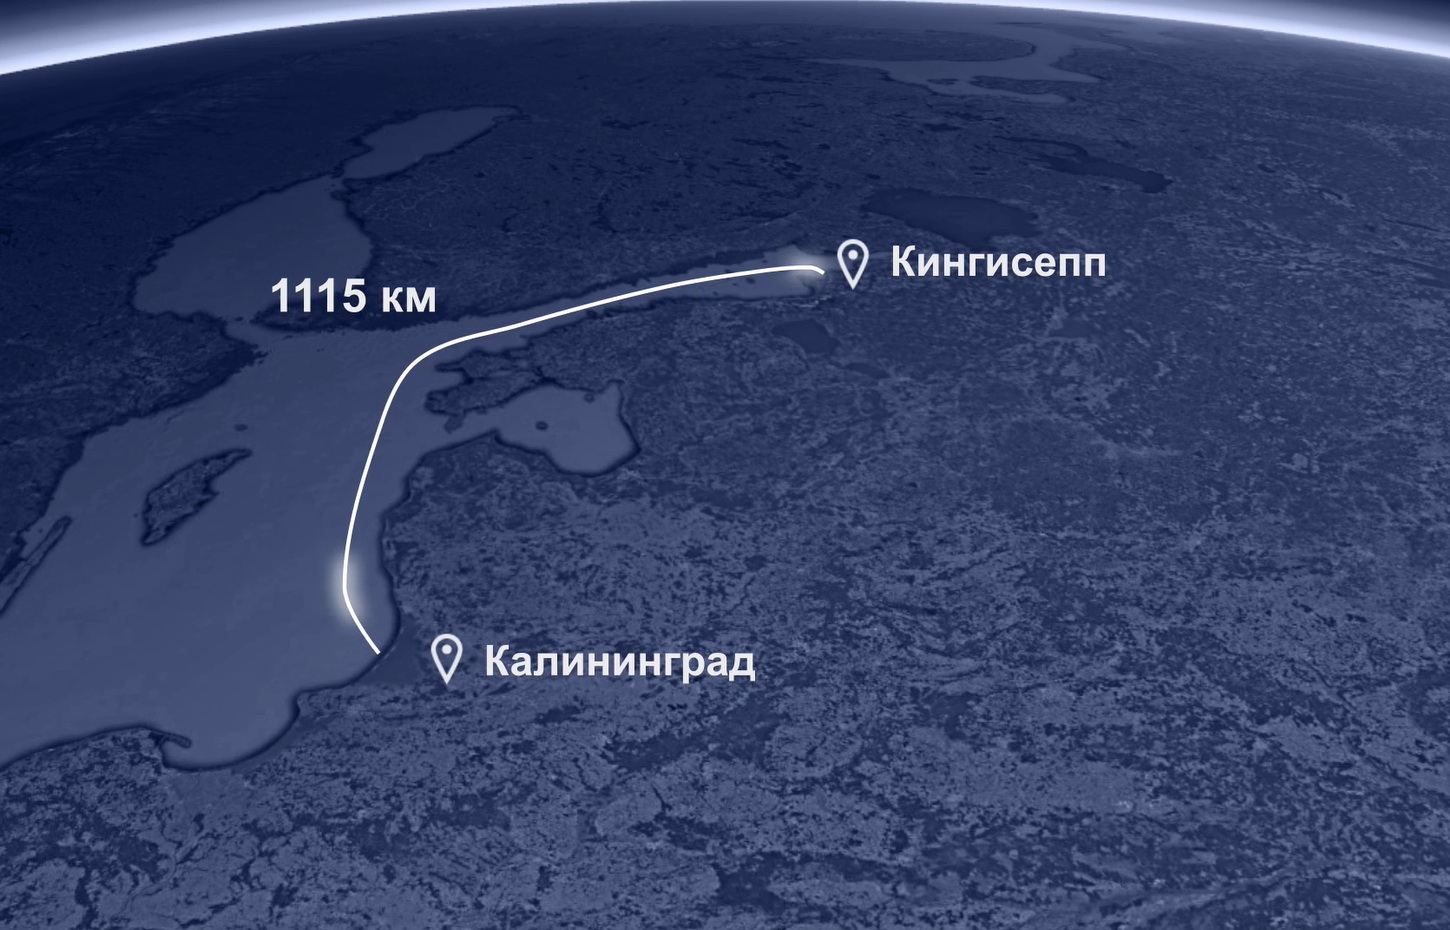 Ростелеком завершил строительство подводной волоконно-оптической линии связи до Калининграда 1